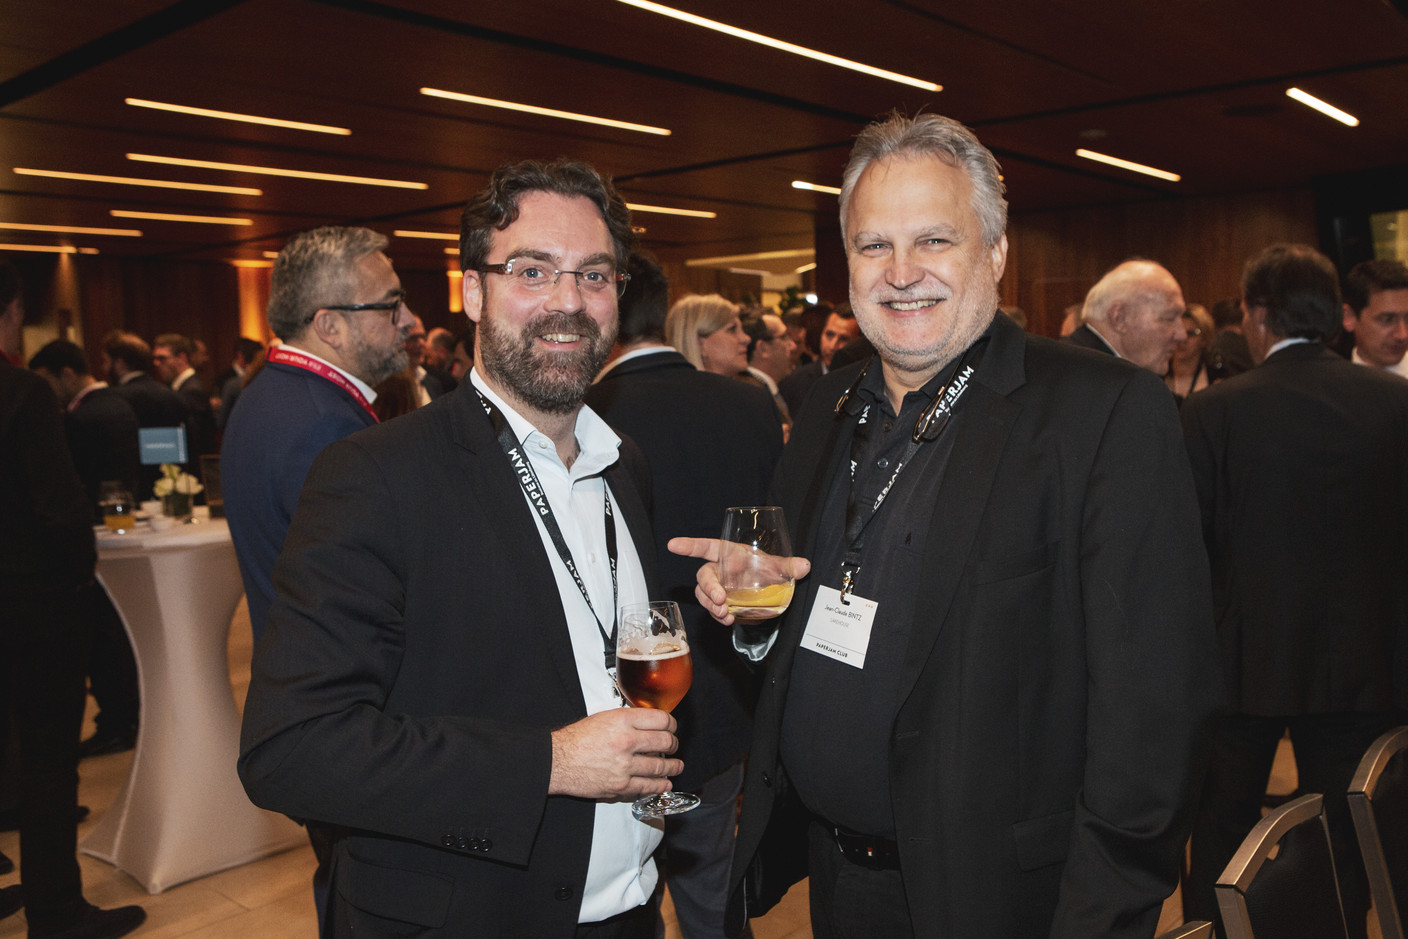 Daniel Sahr (Ministère de l'Économie) et Jean-Claude Bintz (Lakehouse) (Photo: Jan Hanrion / Maison Moderne Publishing)